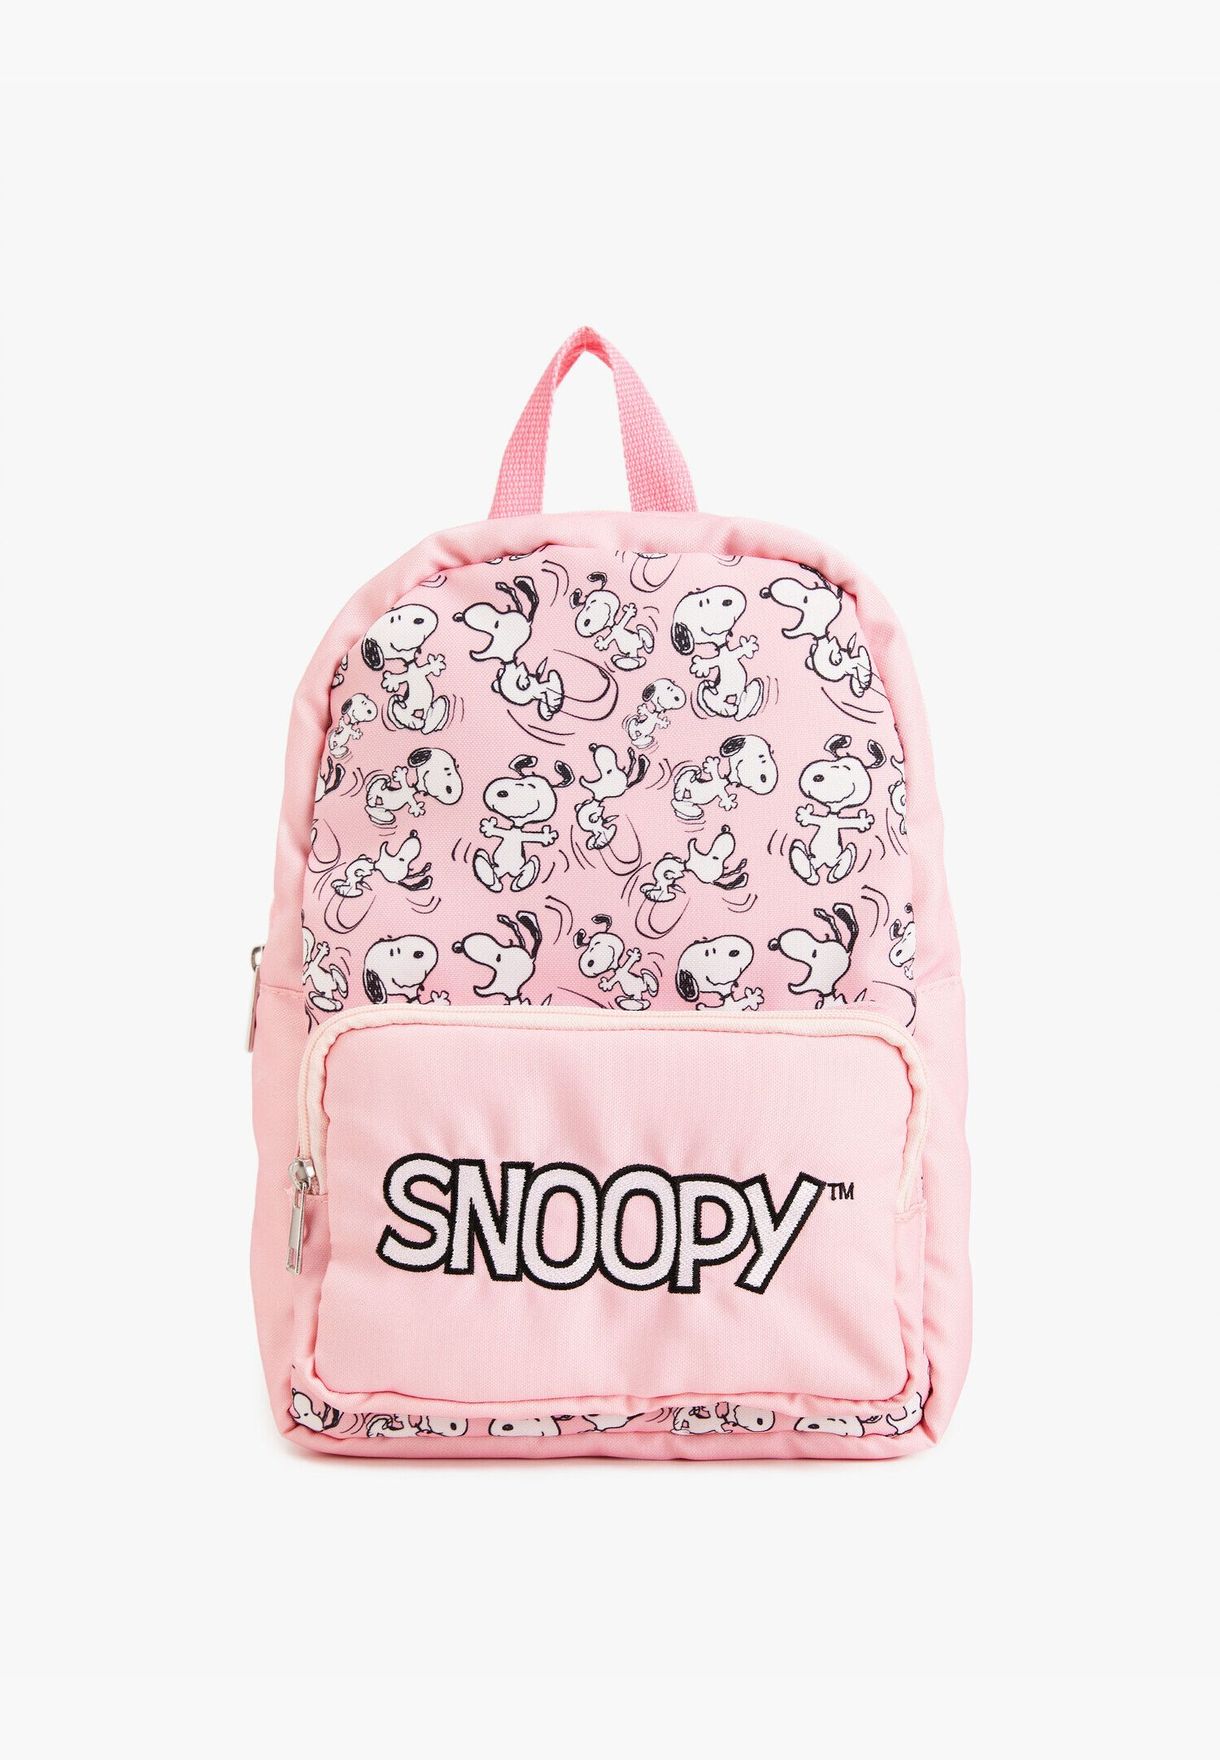 Snoopy Licensed Printed Backpack